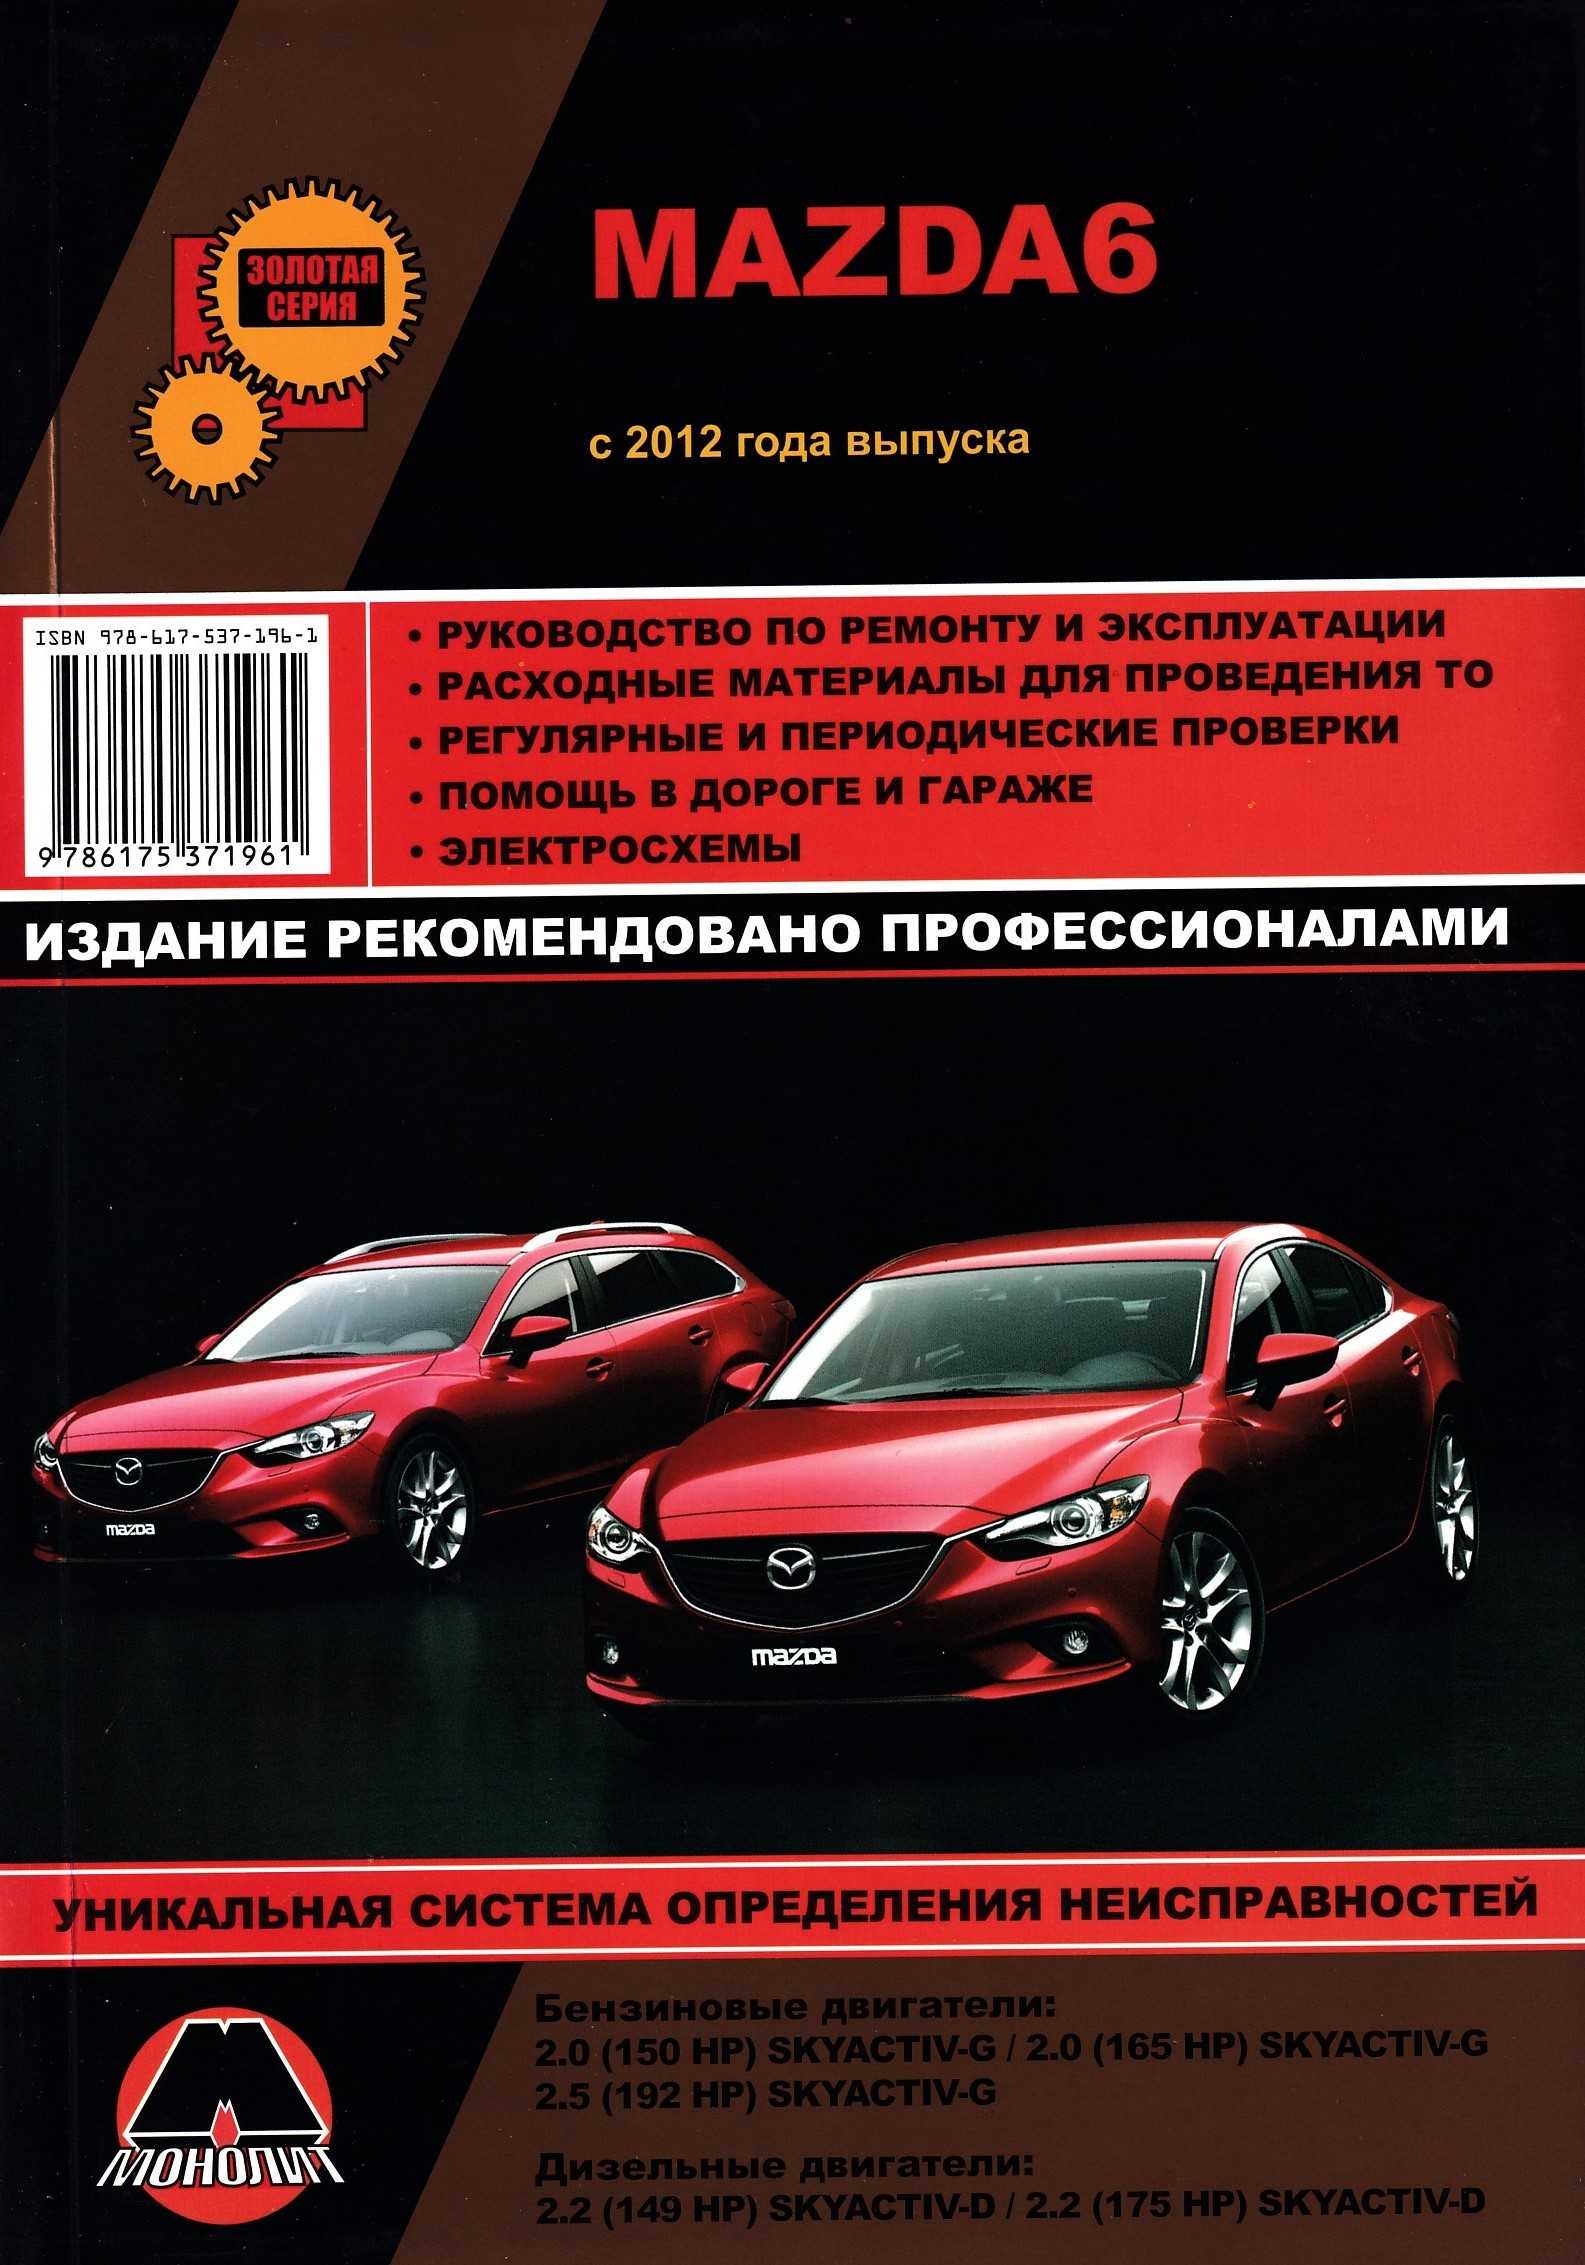 Mazda 6 gj (3 поколения) – слабые места, поломки, покупка бу авто